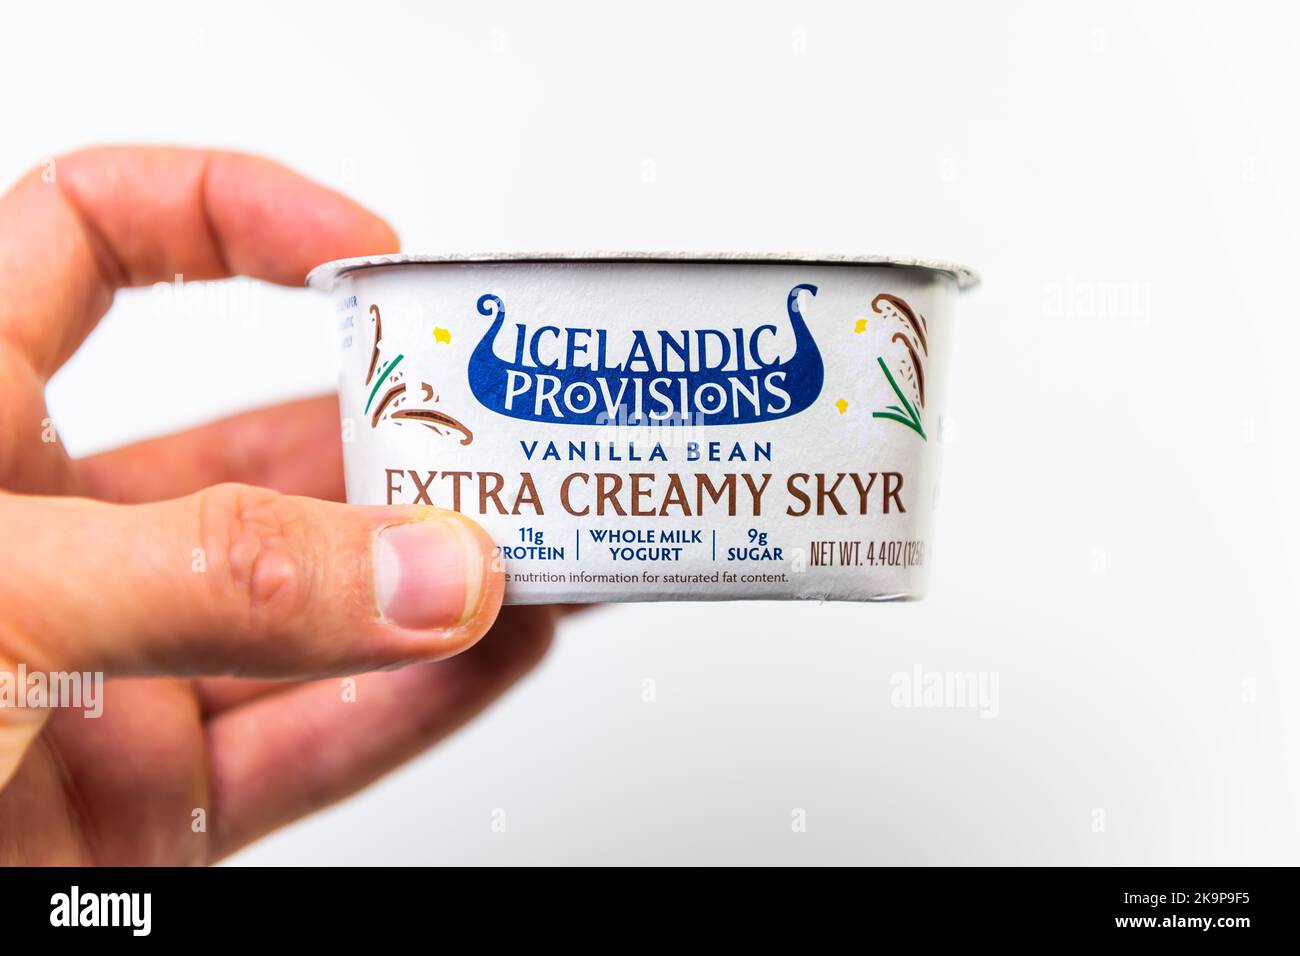 Napoli, Stati Uniti d'America - 21 ottobre 2021: Etichetta prodotto per disposizioni islandesi extra cremoso yogurt skyr cibo tradizionale in Islanda fatto con fagioli alla vaniglia Foto Stock